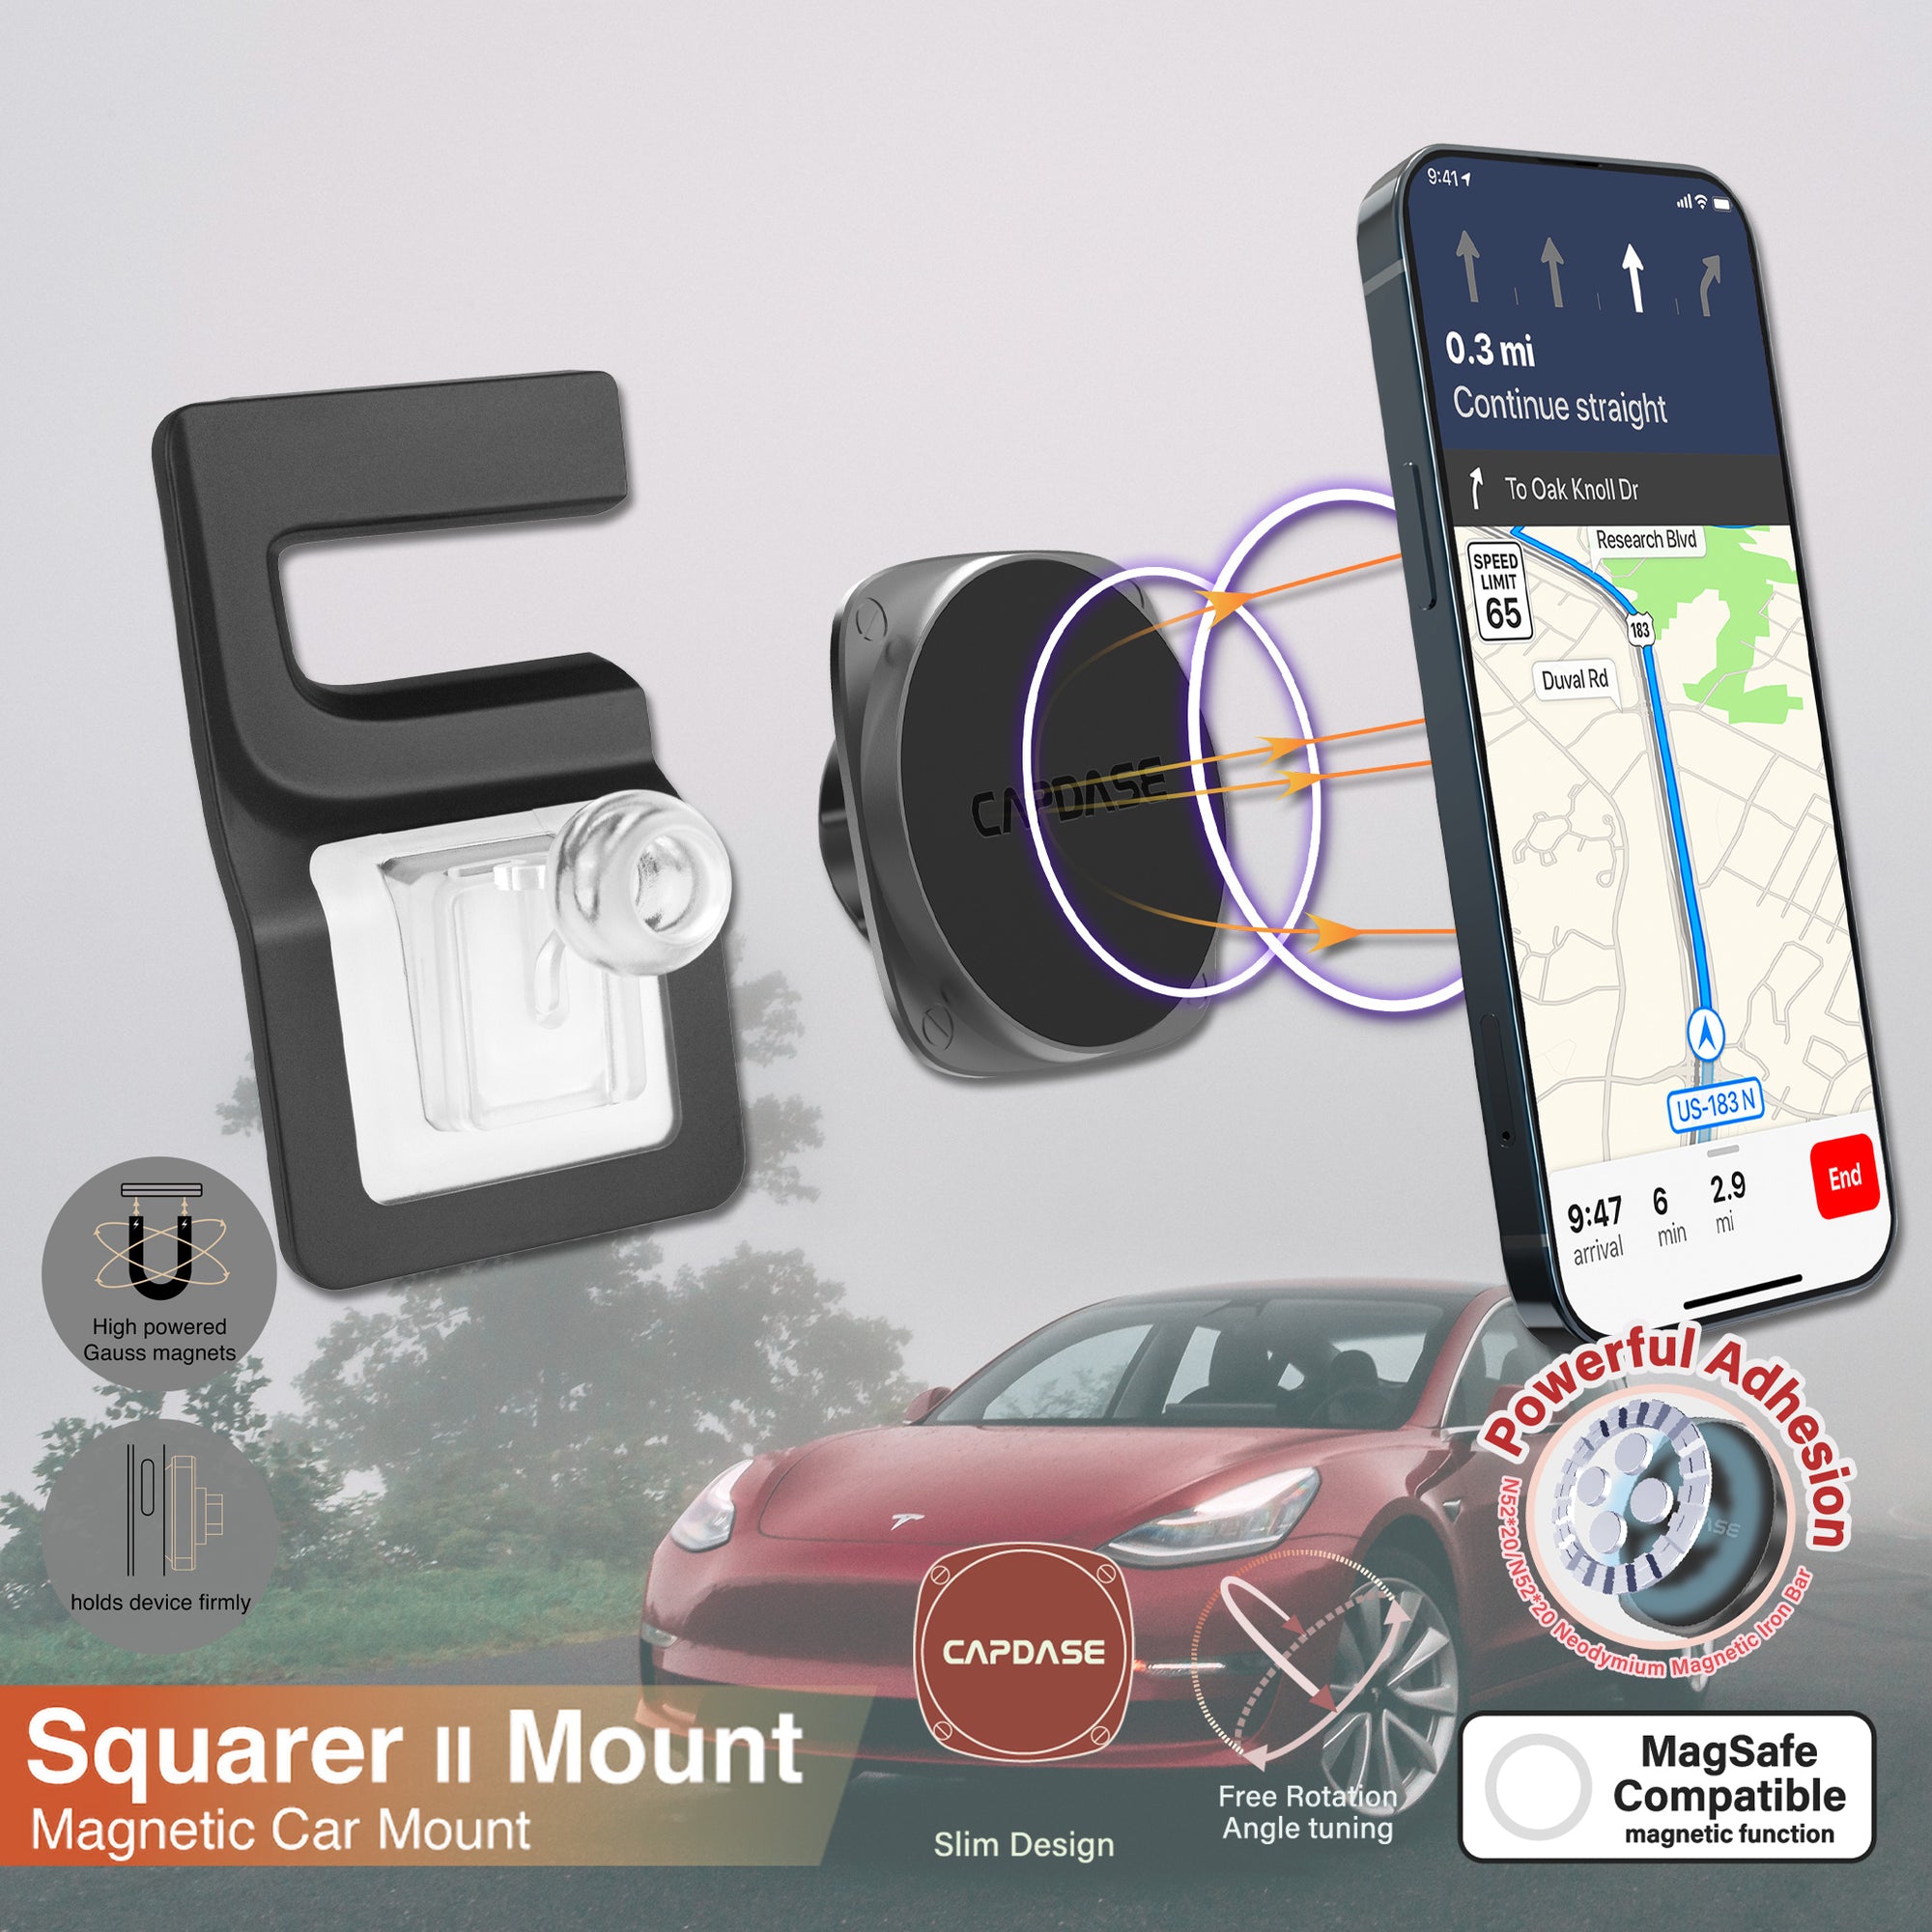 SQUARER II Magnetic Car Mount DSH Base - MSX for Tesla Model S/X